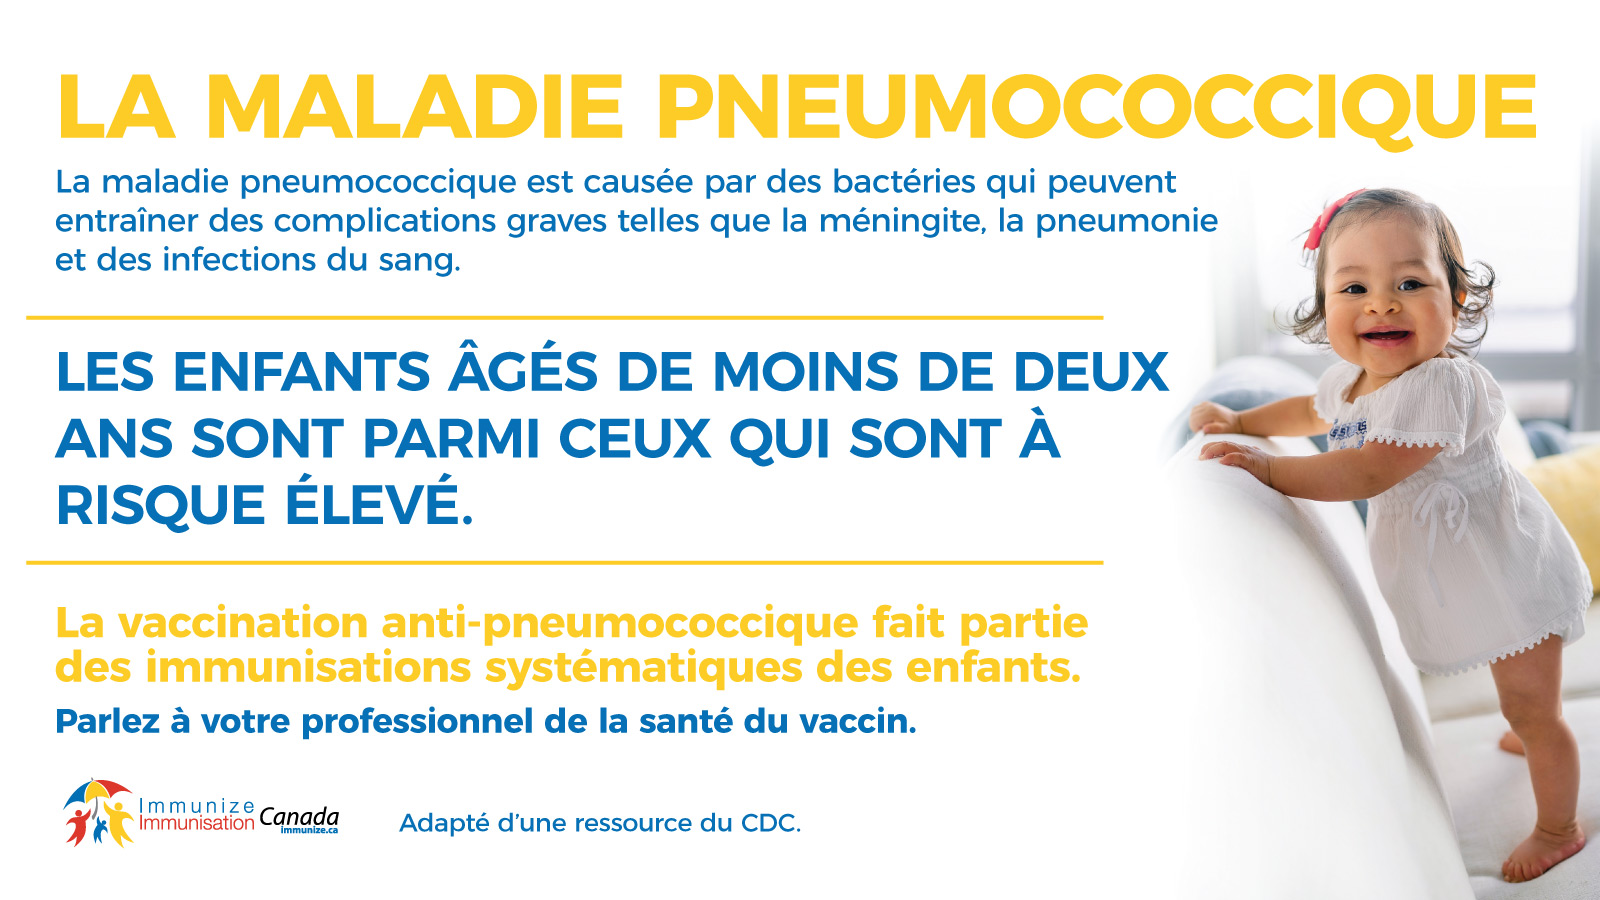 La maladie pneumococcique : les enfants âgés de moins de deux ans (image pour médias sociaux, pour Twitter)